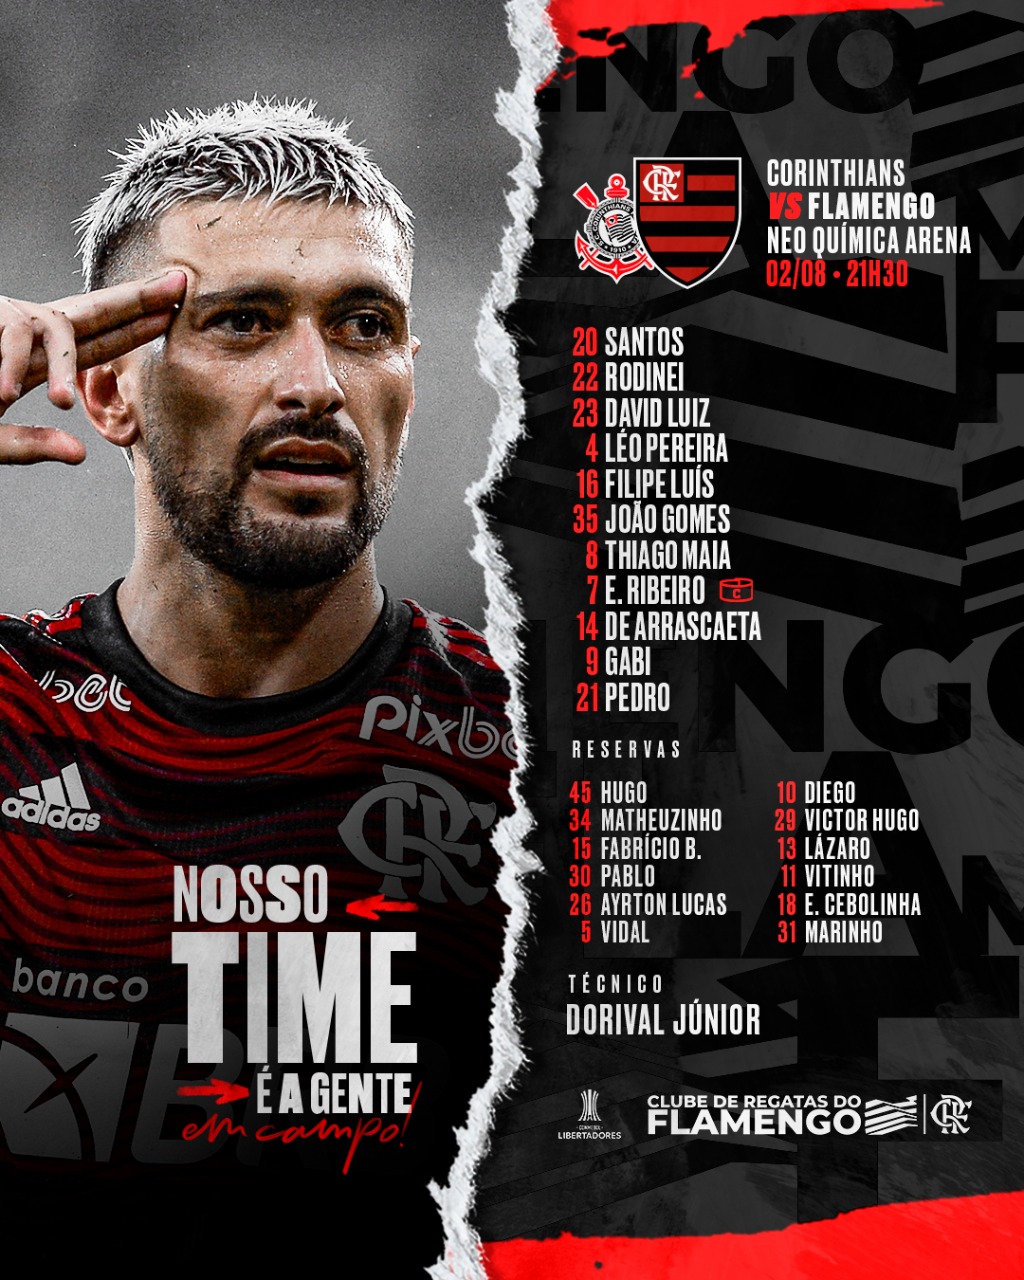 SAIU! Sem Arrascaeta, Flamengo divulga escalação para jogo contra o Santos